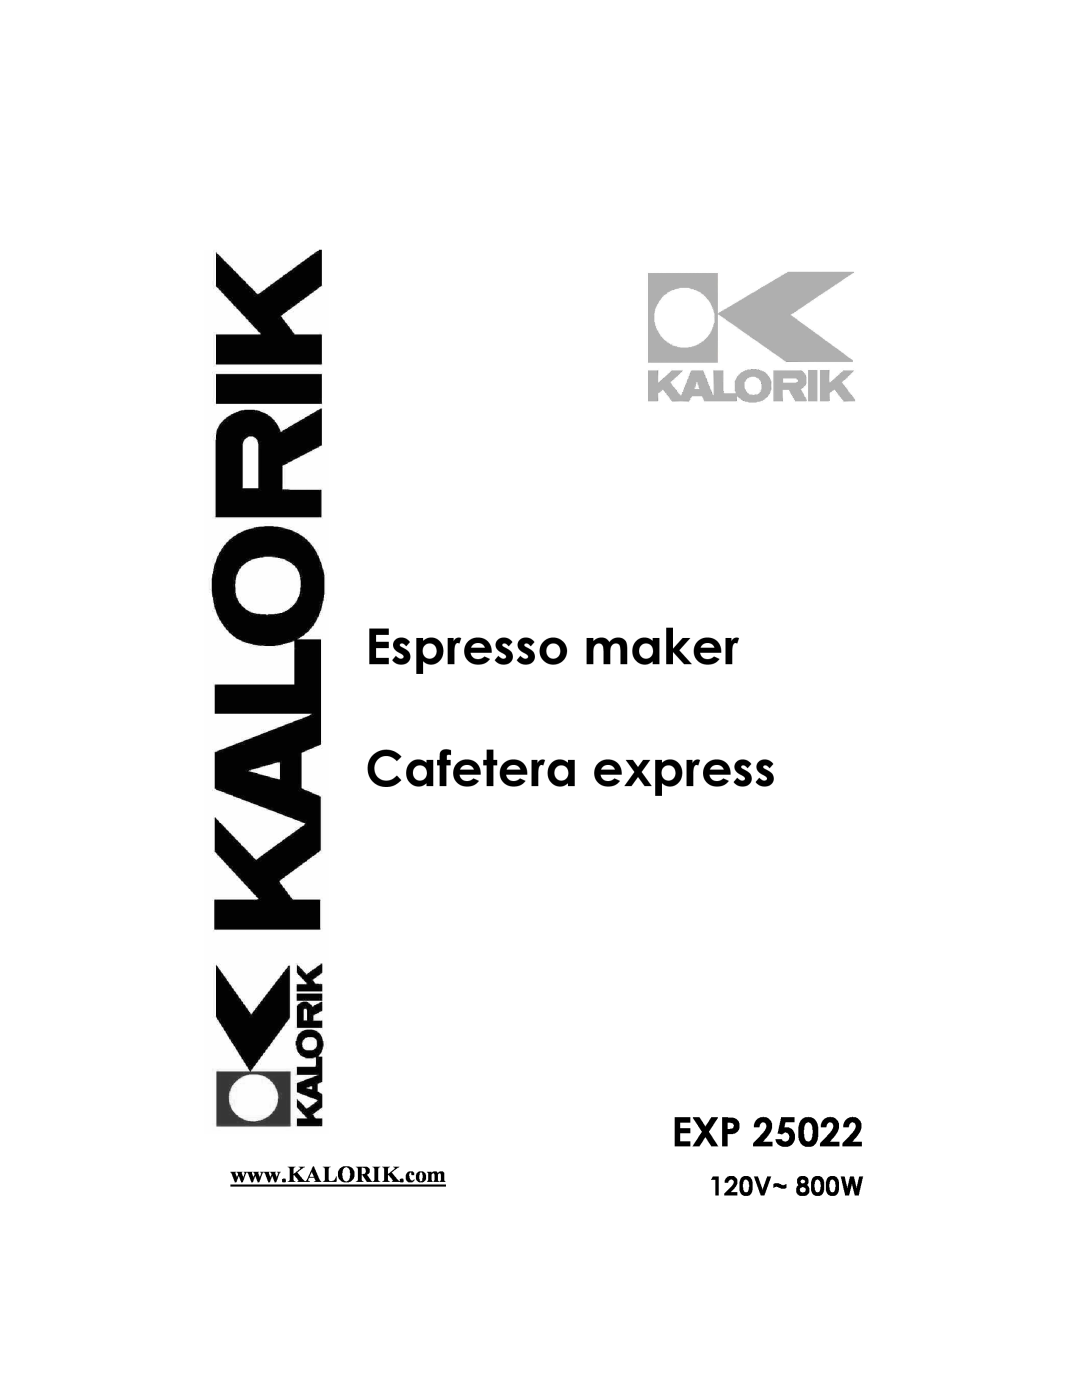 Kalorik EXP 25022 manual 120V~ 800W, Espresso maker Cafetera express 